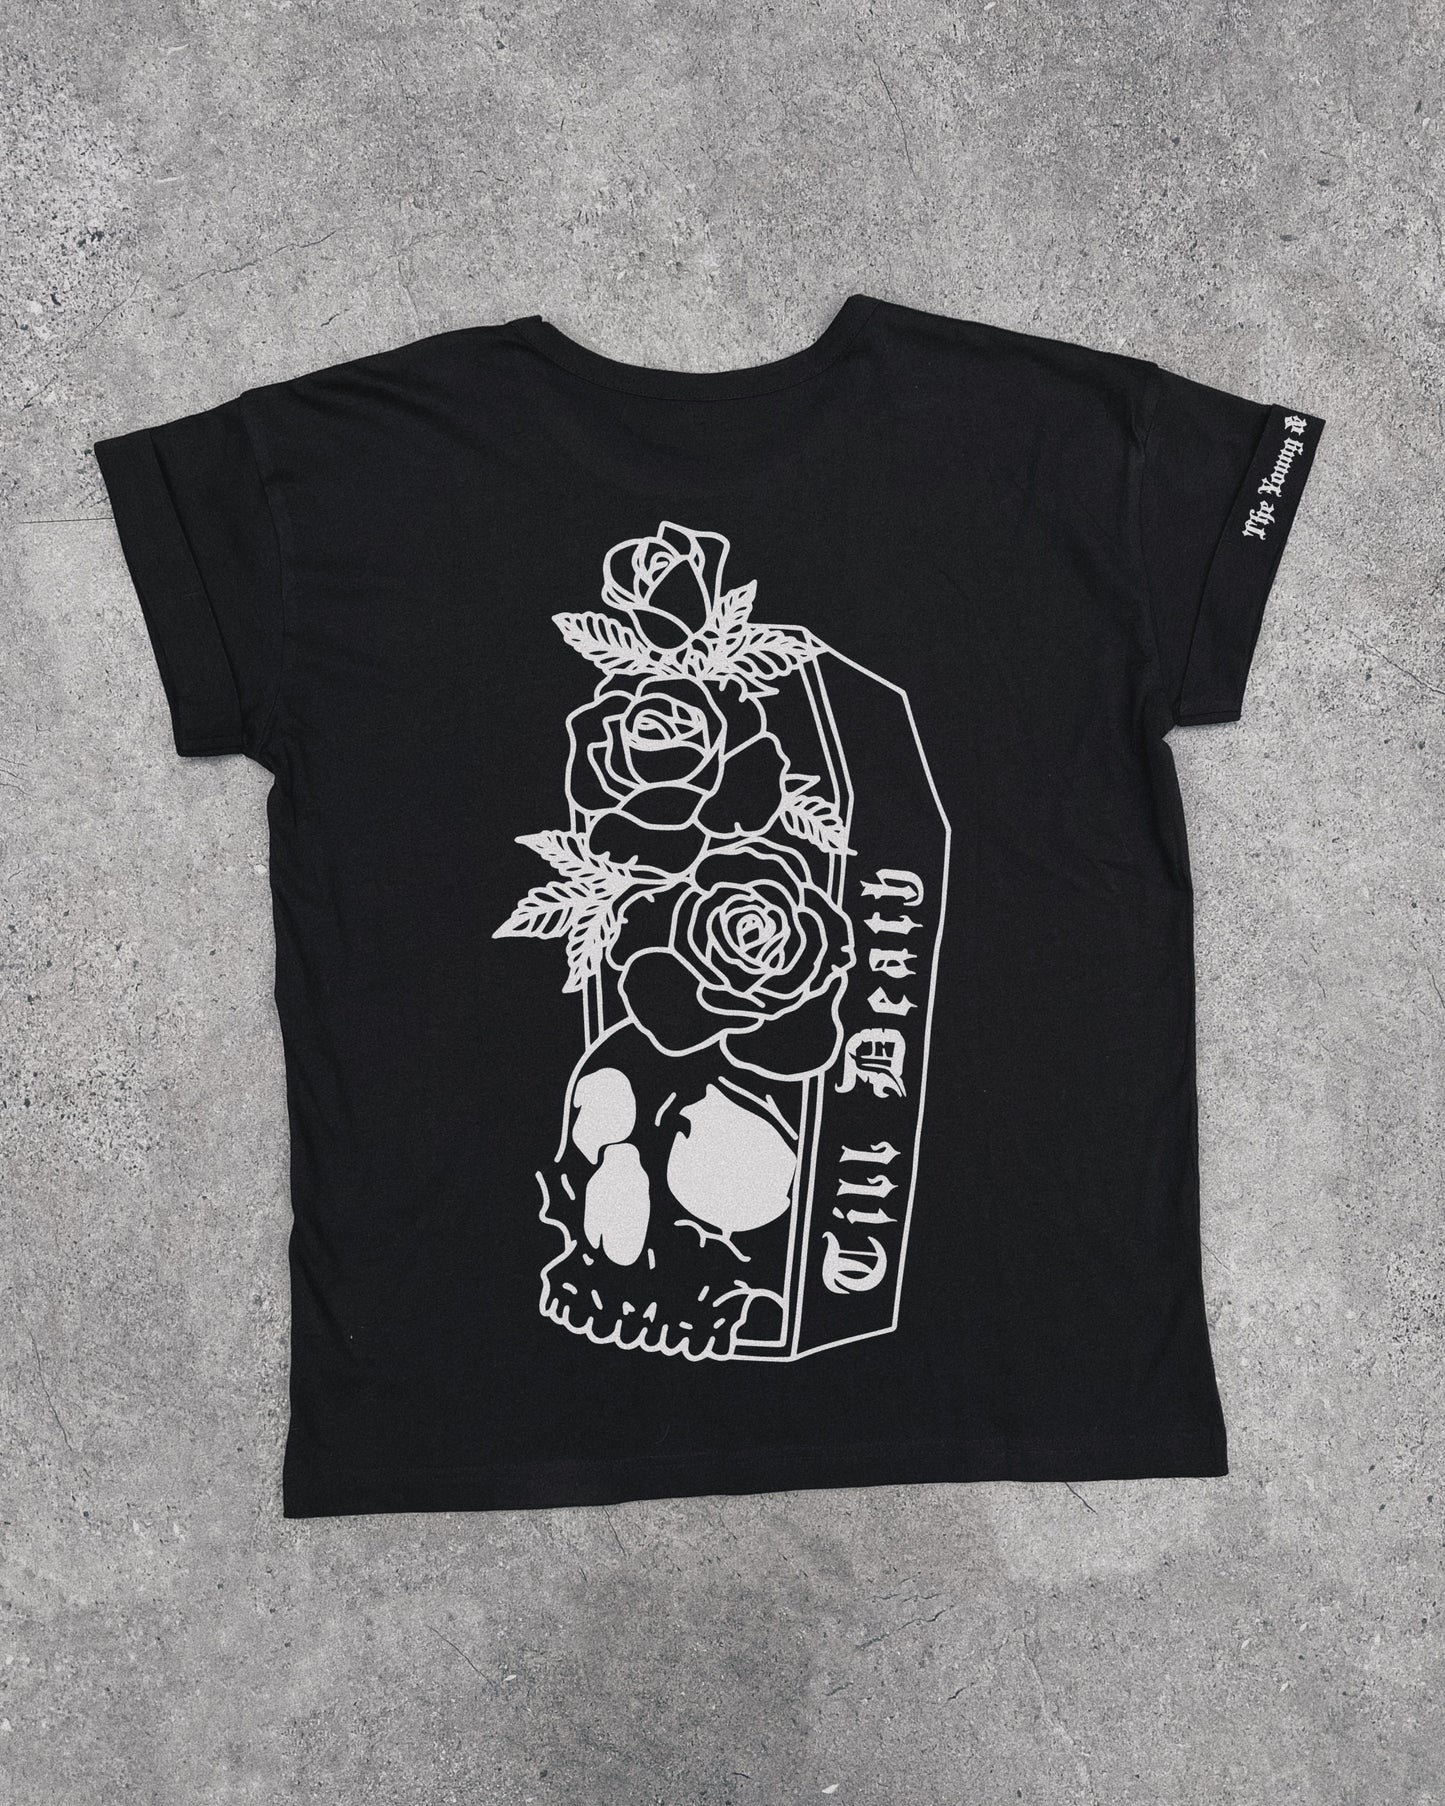 Till Death - T-Shirt